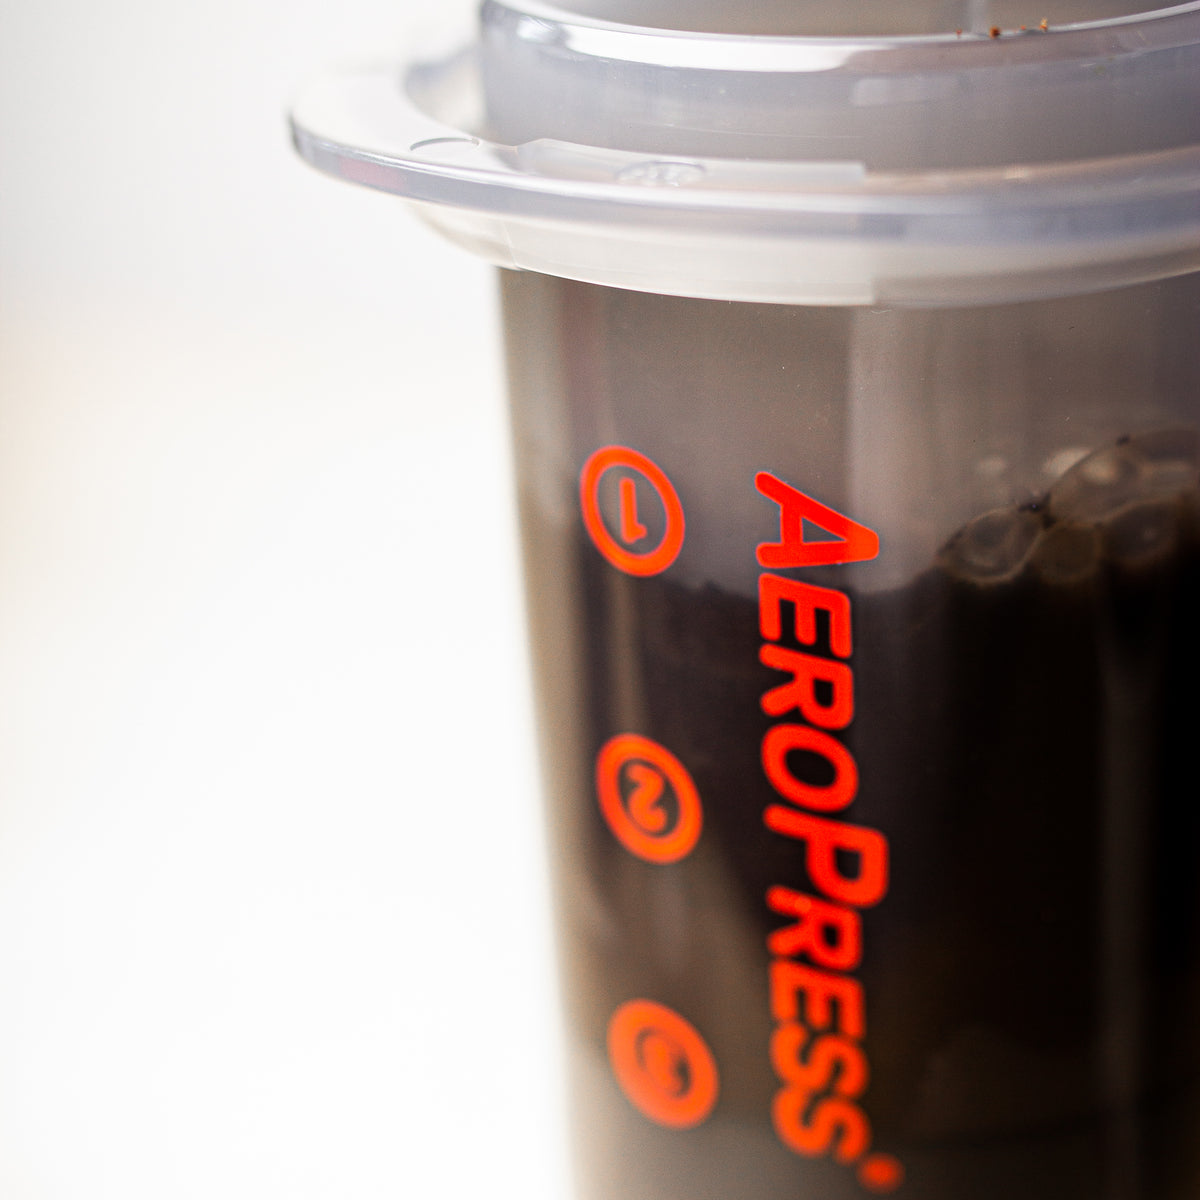 Aeropress Go coffee brewer